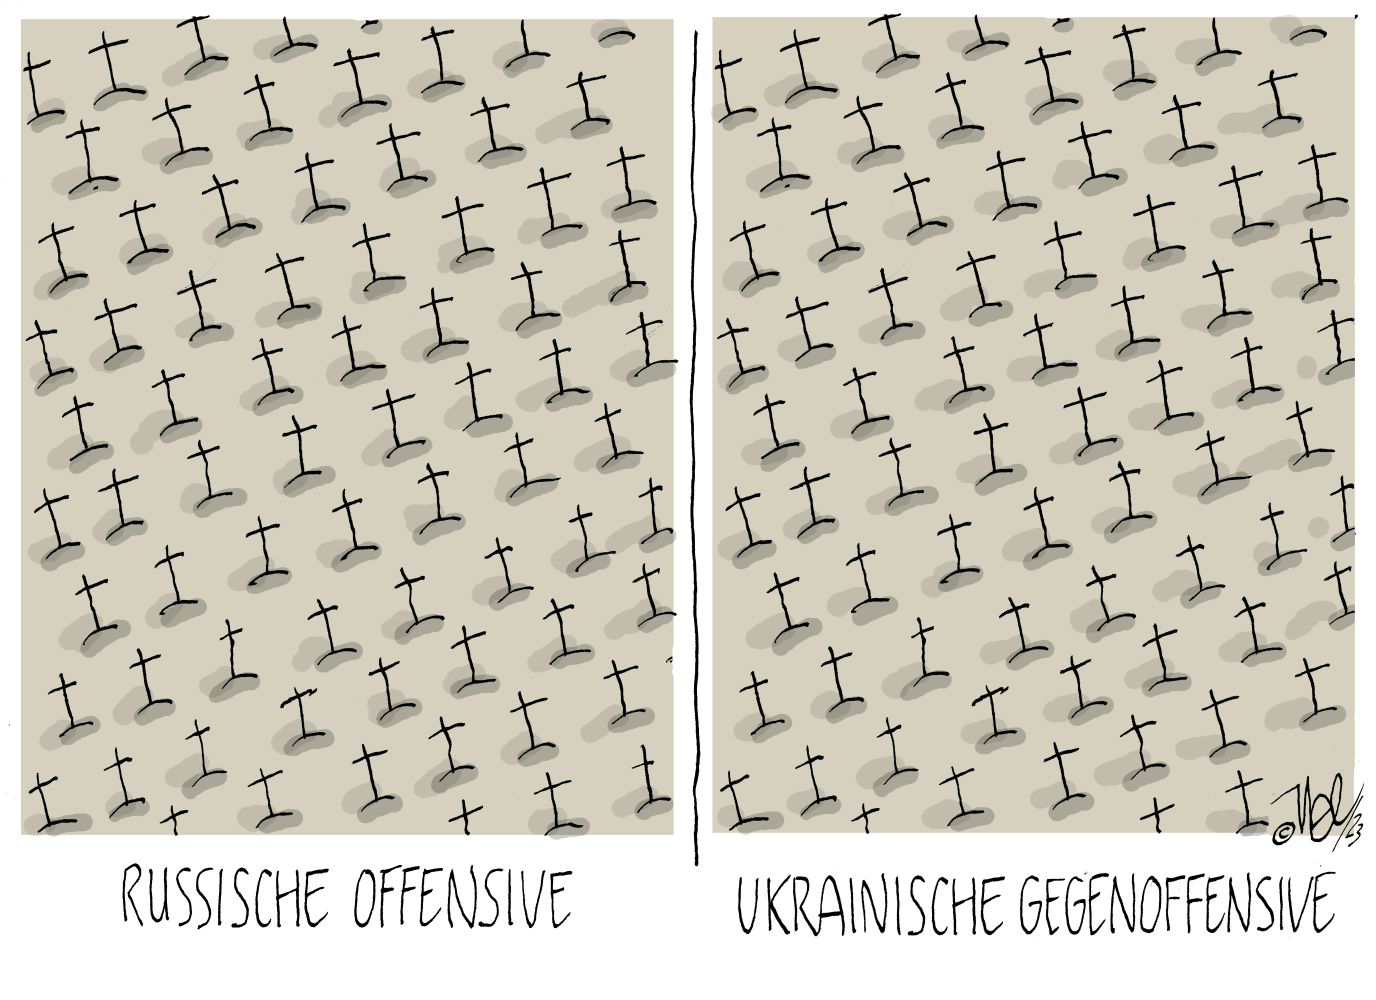 Zwei Zeichnungen von unzähligen Kreuzen, die einen Kriegsgräberfriedhof darstellen sollen. Das linke Gräberfeld ist mit "Russische Offensive" unterschrieben, das Rechte mit "Ukrainische Gegenoffensive"